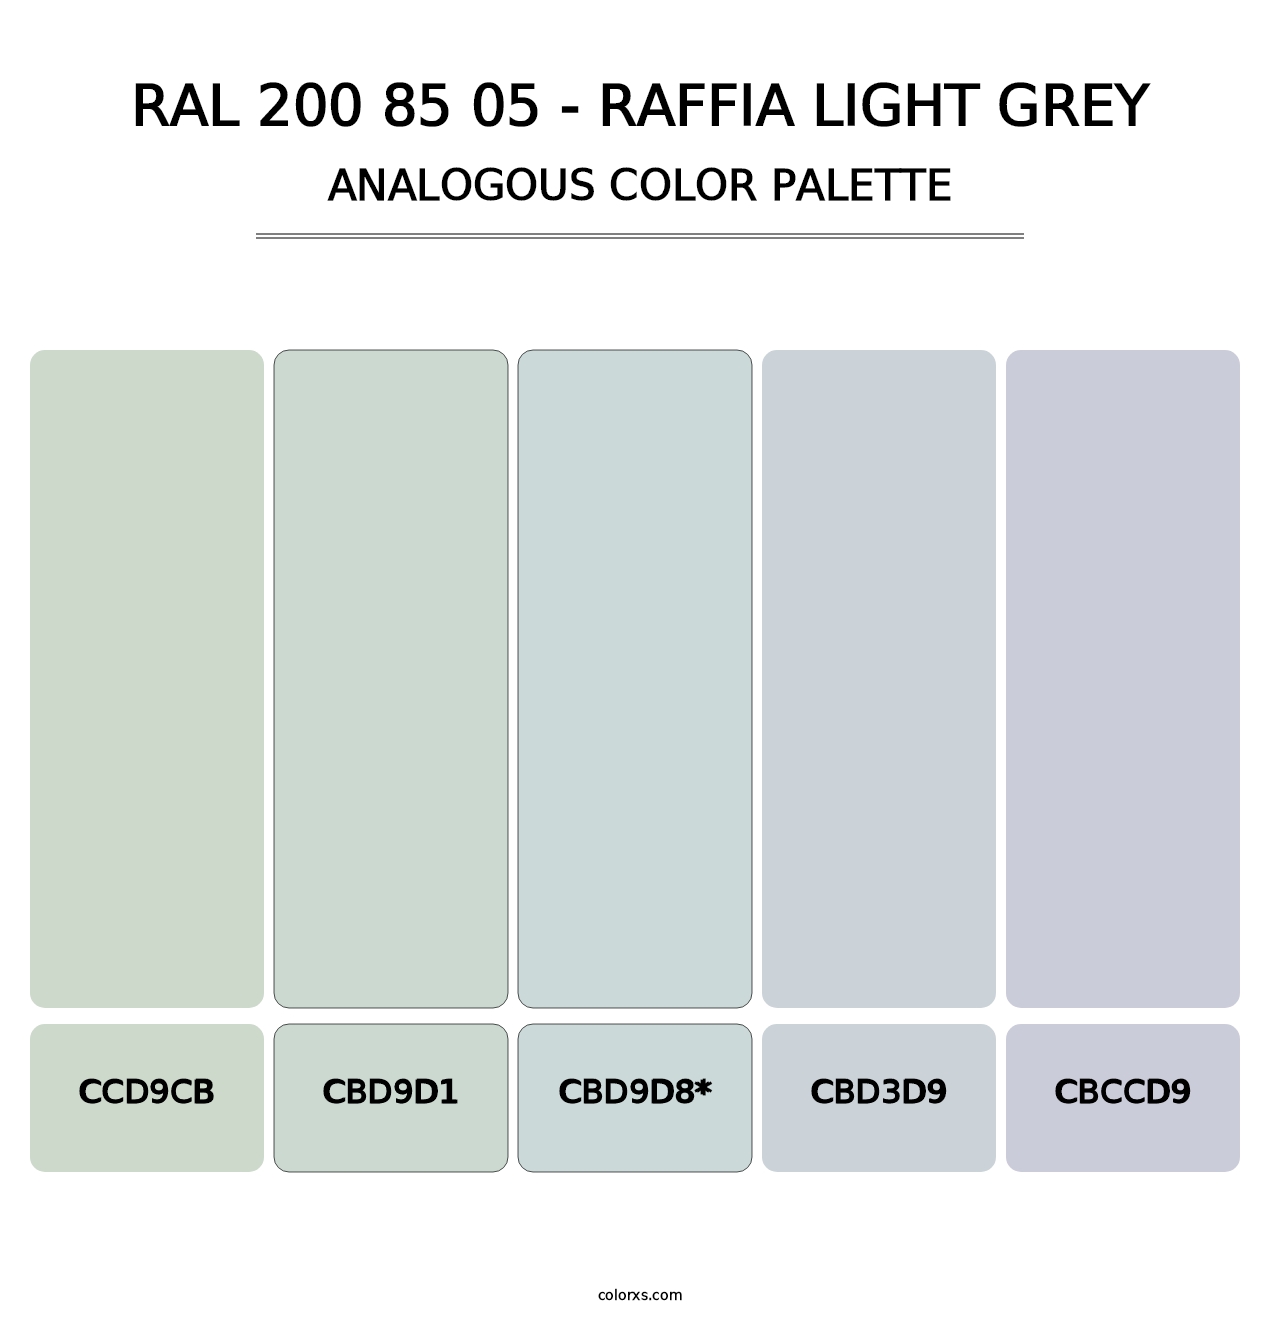 RAL 200 85 05 - Raffia Light Grey - Analogous Color Palette